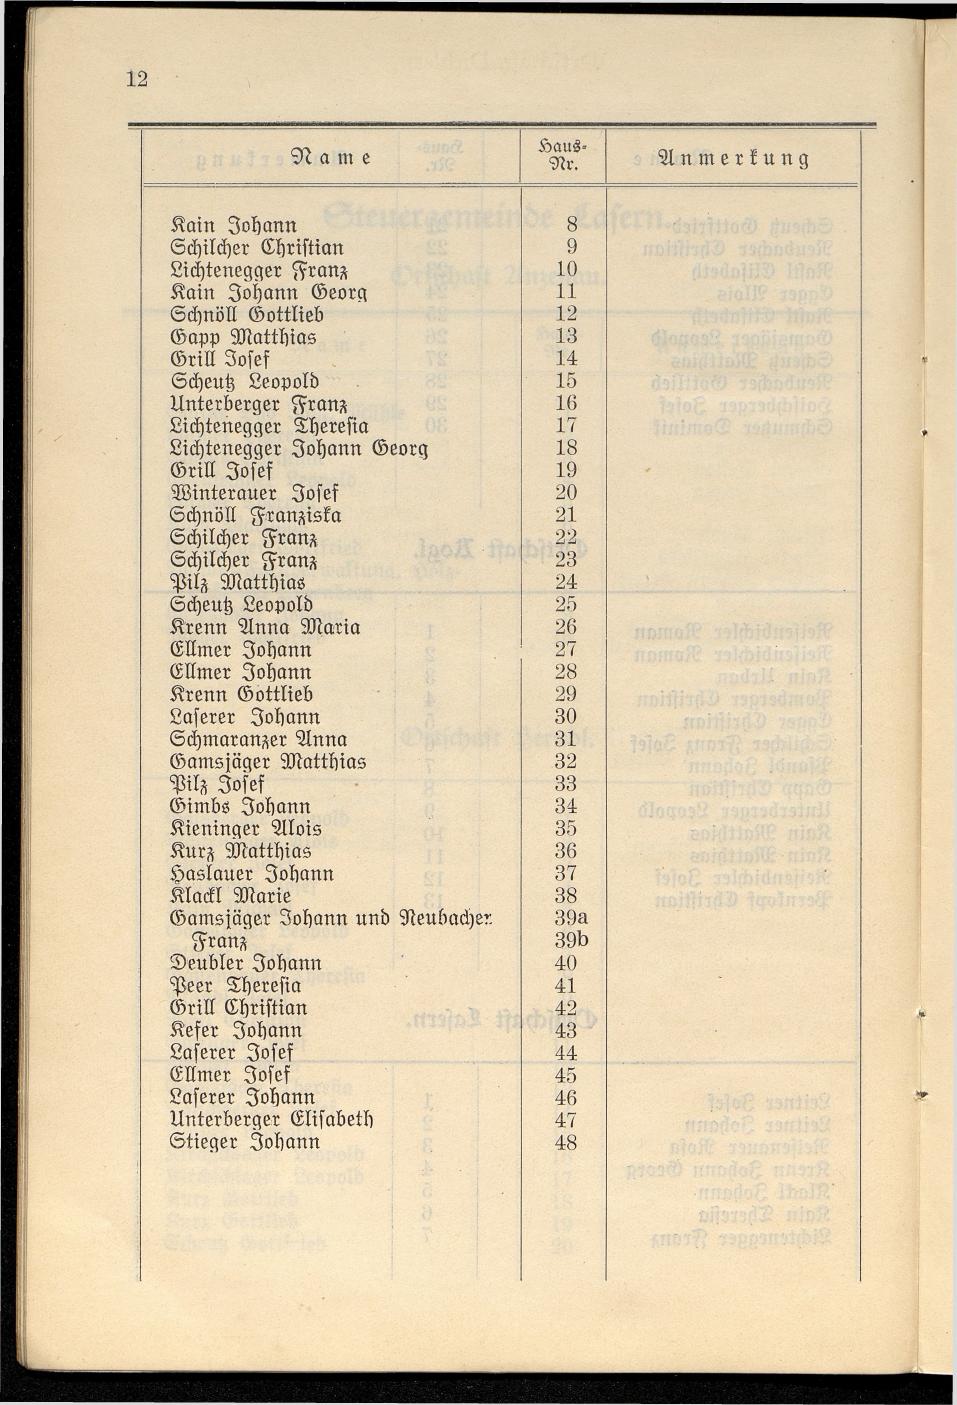 Häuser-Verzeichnis der Gemeinde Goisern nach dem Stande von Juli 1927 - Seite 19